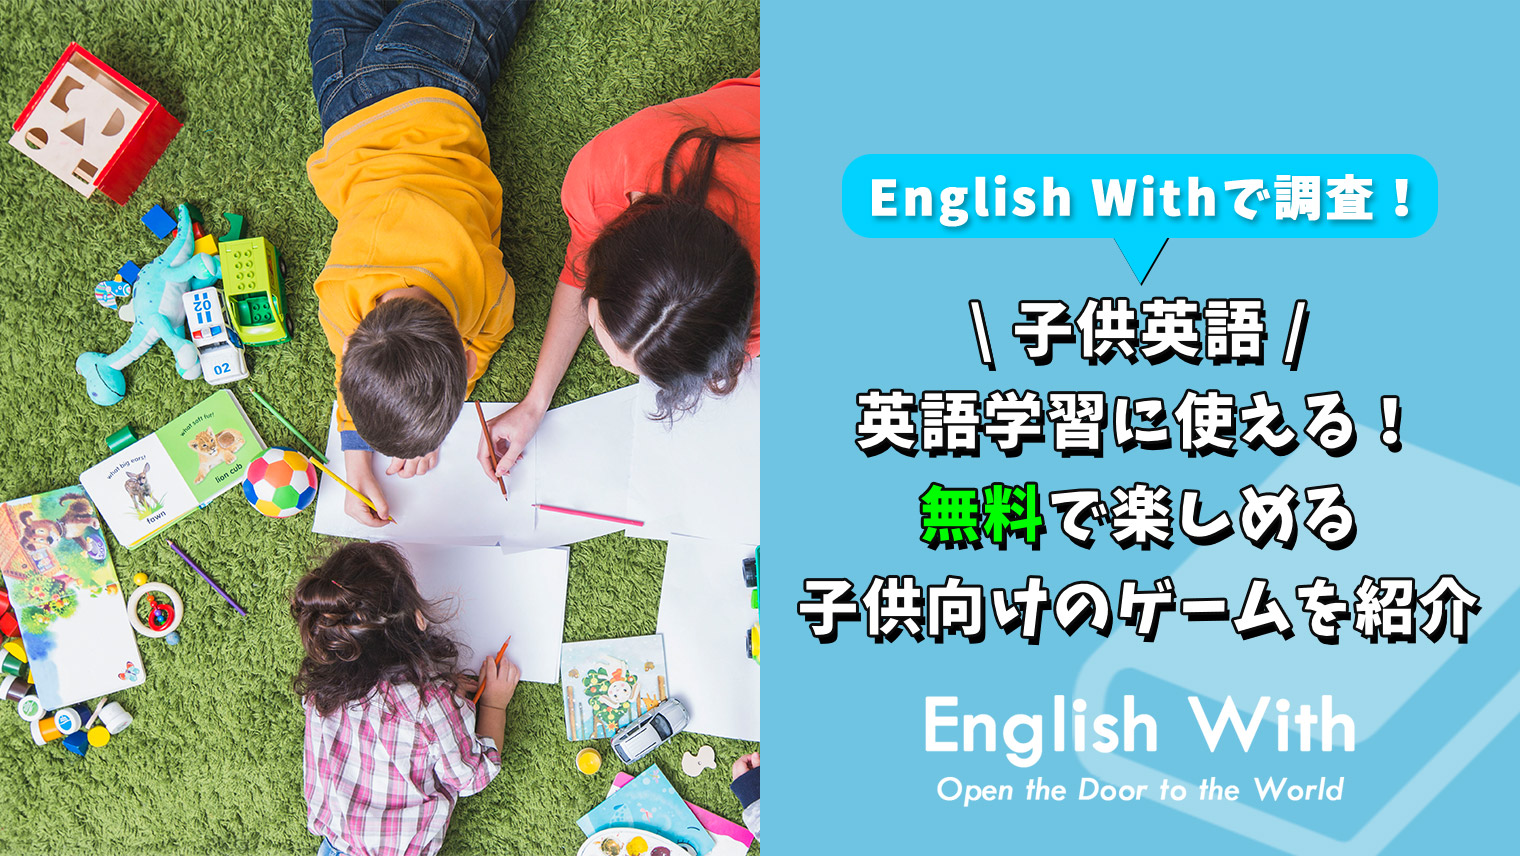 英語学習に使える 無料で楽しめる子供向けのゲームを紹介 特徴別 英語学習メディアenglish With